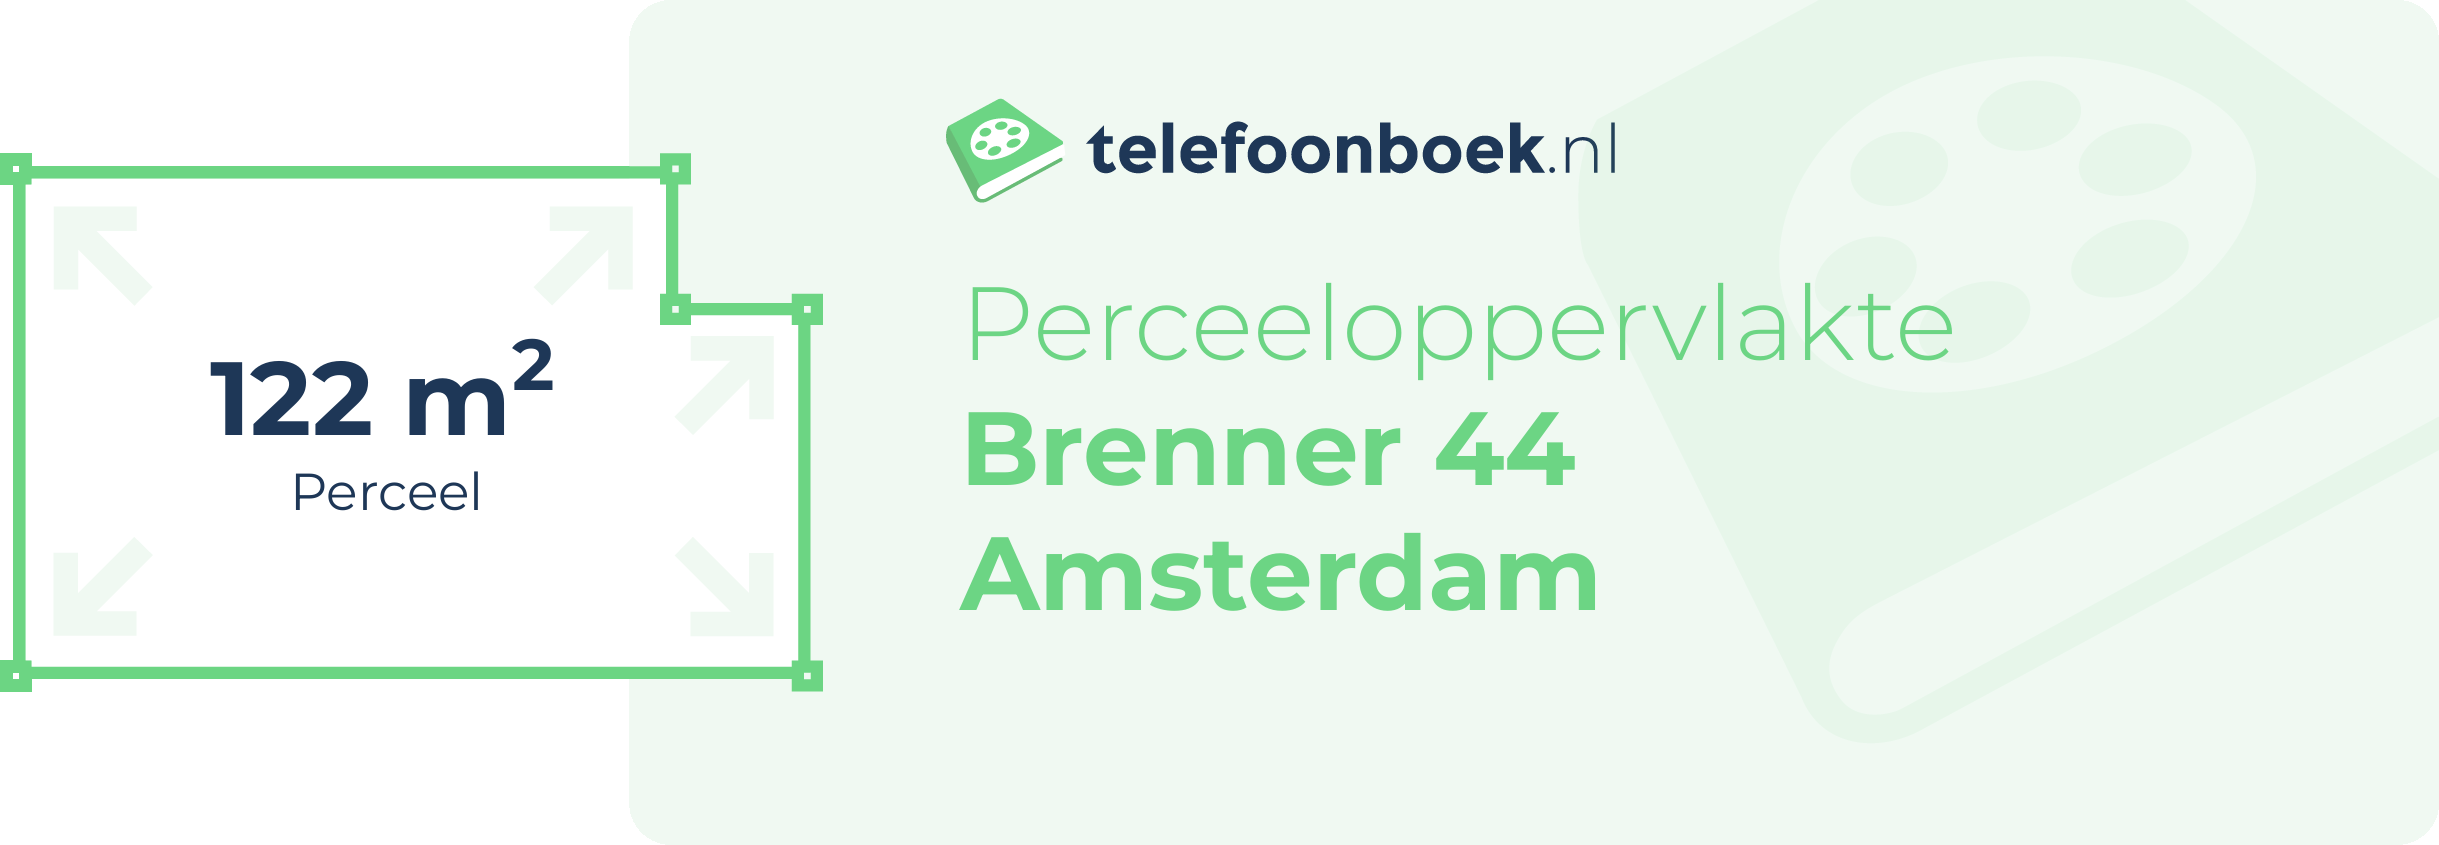 Perceeloppervlakte Brenner 44 Amsterdam